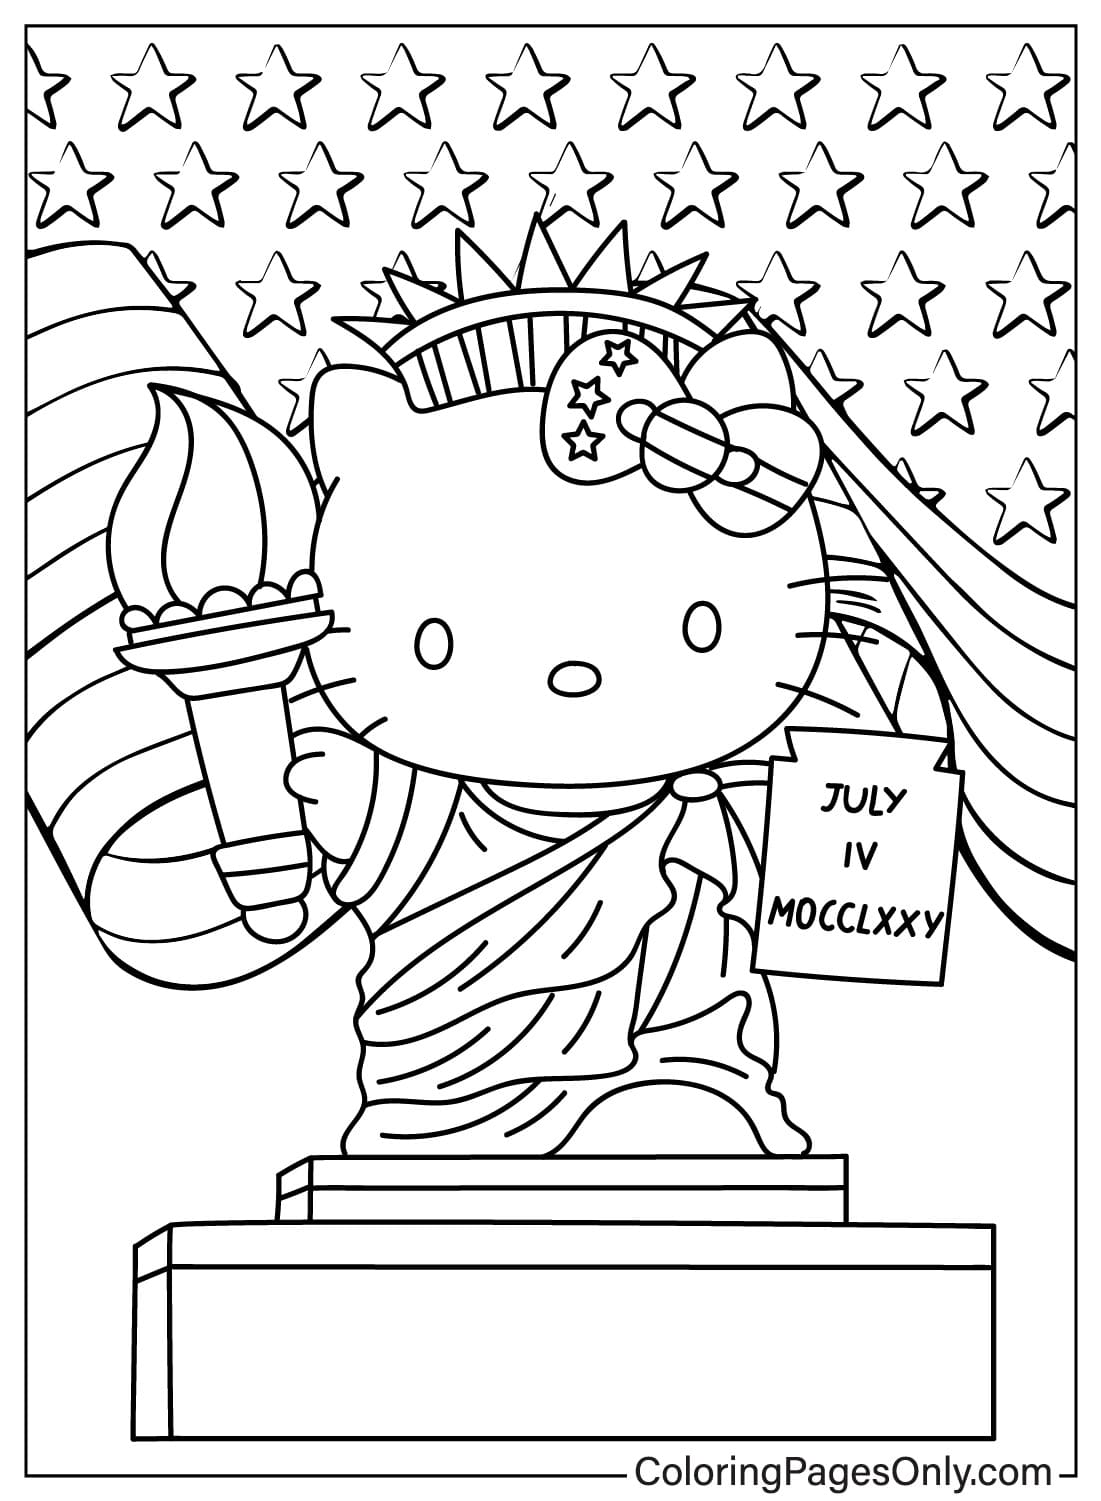 Coloriage de la Statue de la Liberté Hello Kitty de la Statue de la Liberté